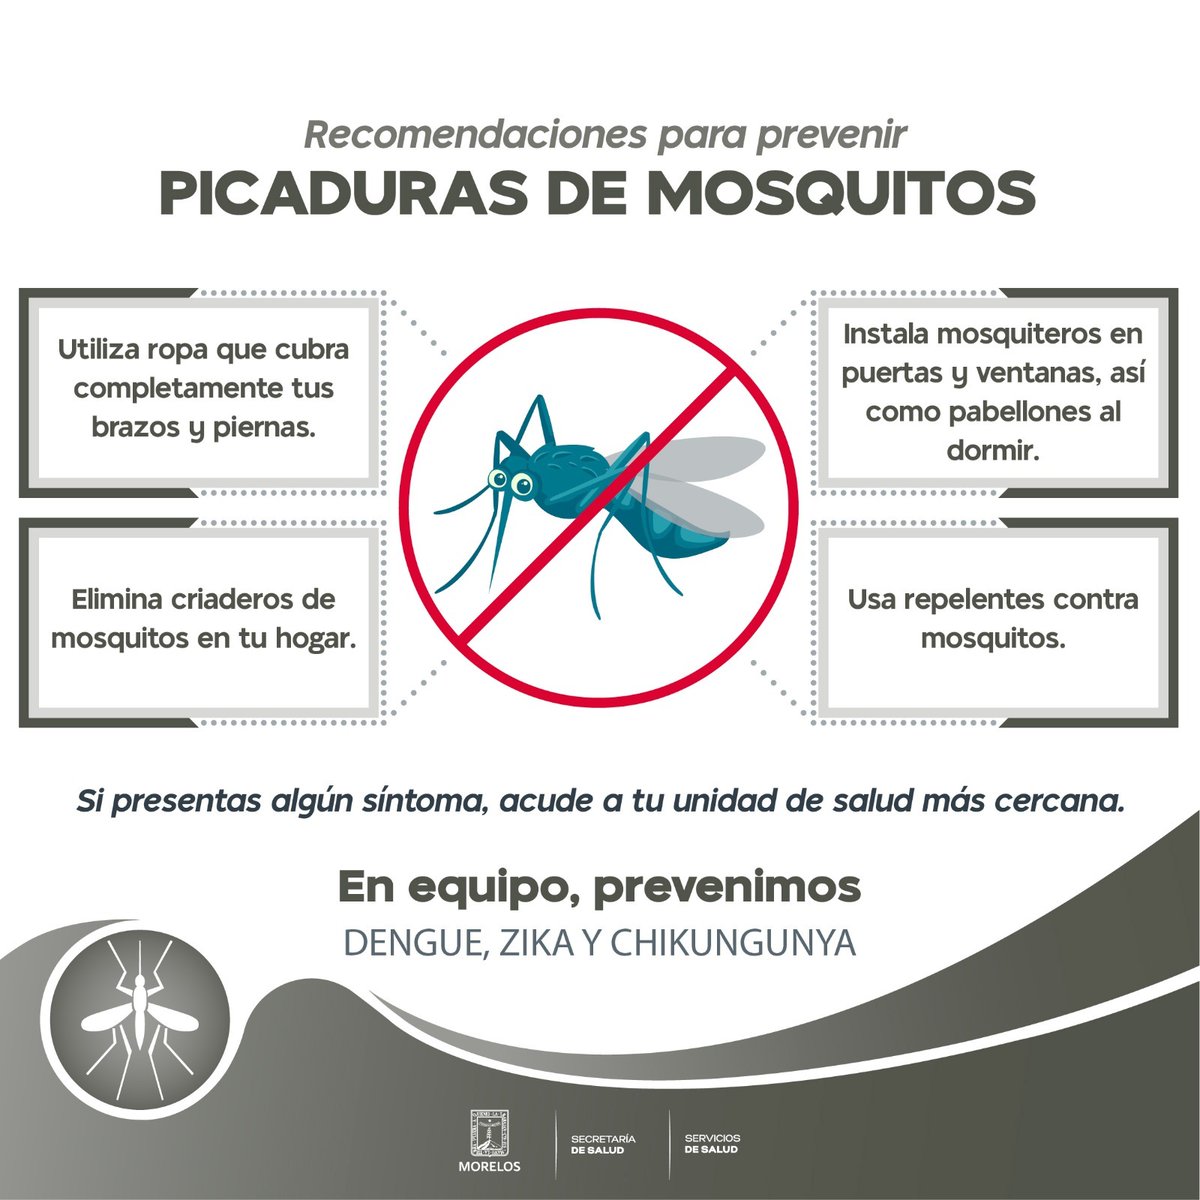 Sigue estas recomendaciones para evitar la picadura de #mosquito.
Participa en las acciones de #SaneamientoBásico y #EliminaciónDeCriaderos.

¡En equipo prevenimos dengue, zika y chikungunya! 🦟